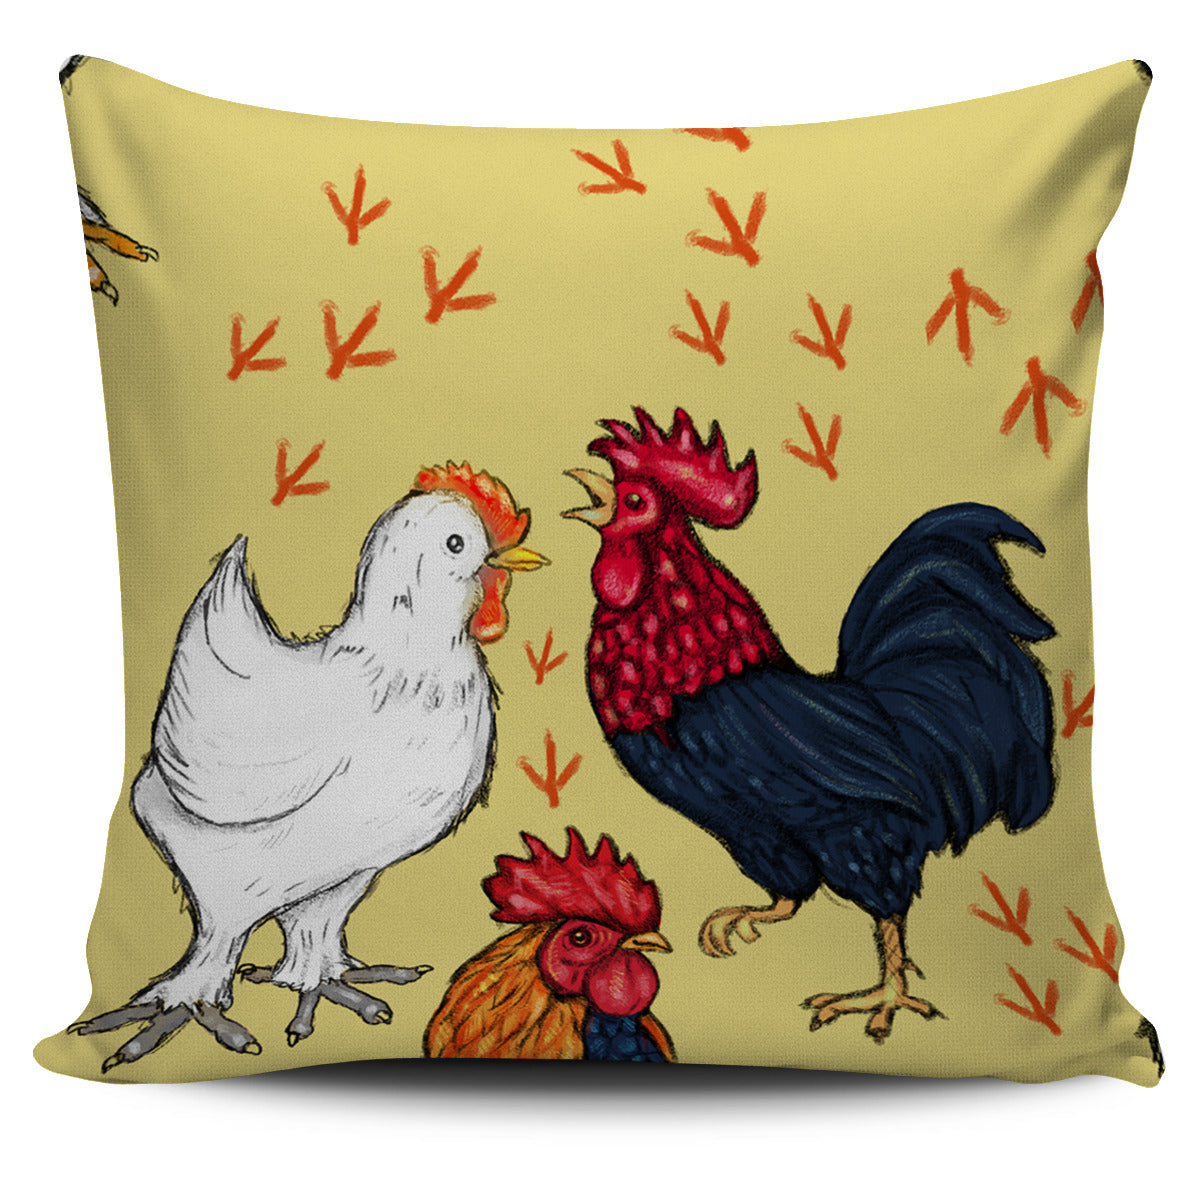 Art Chicken Pillow Cover